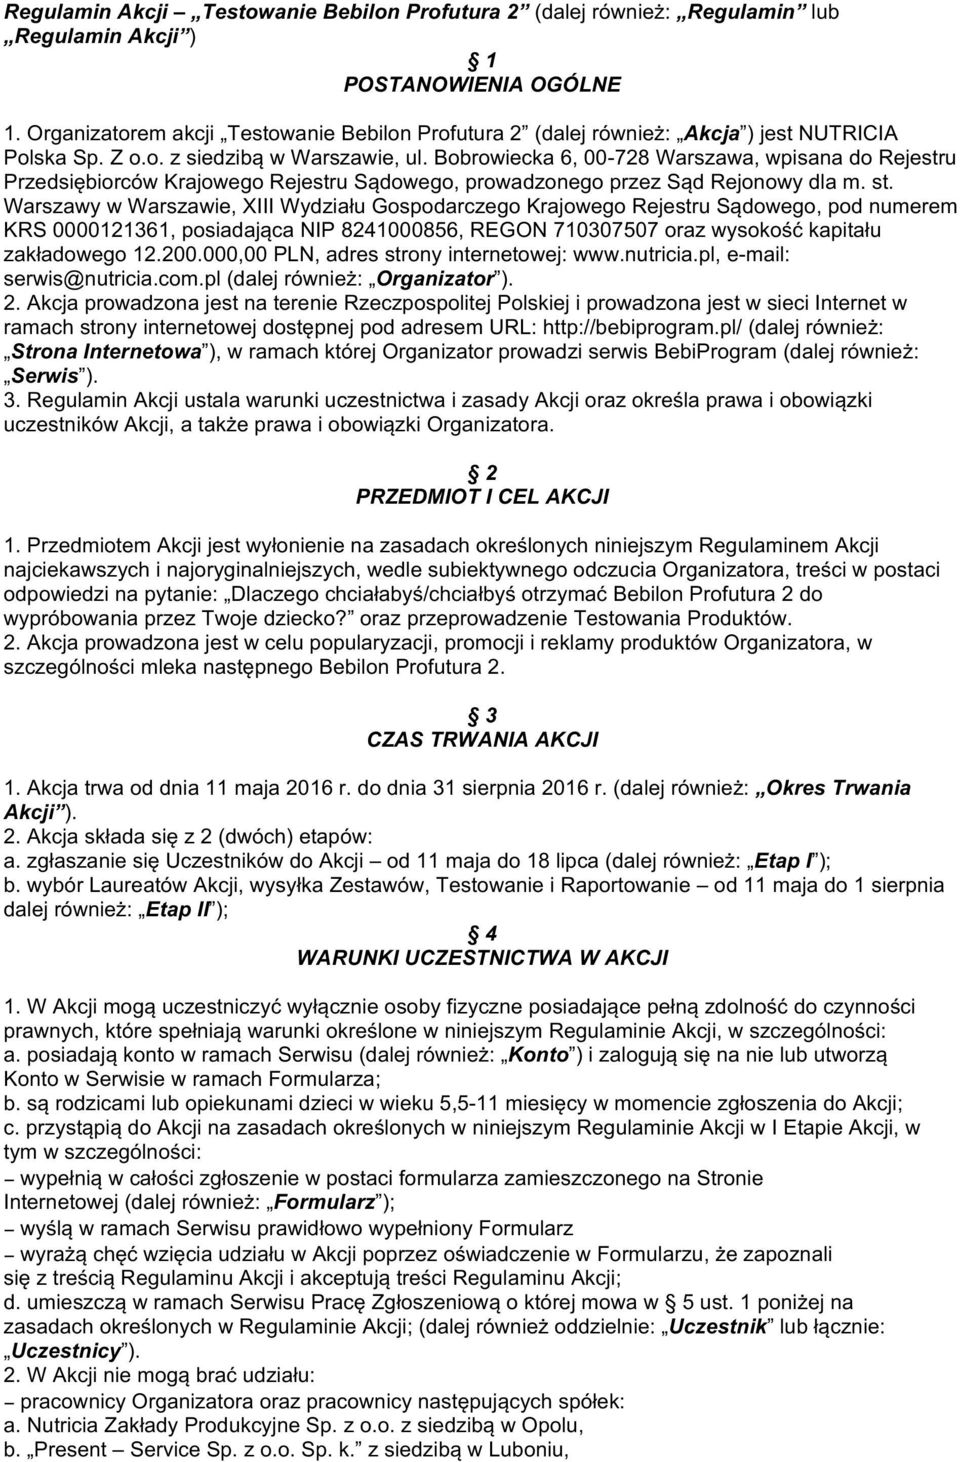 Bobrowiecka 6, 00-728 Warszawa, wpisana do Rejestru Przedsiębiorców Krajowego Rejestru Sądowego, prowadzonego przez Sąd Rejonowy dla m. st.